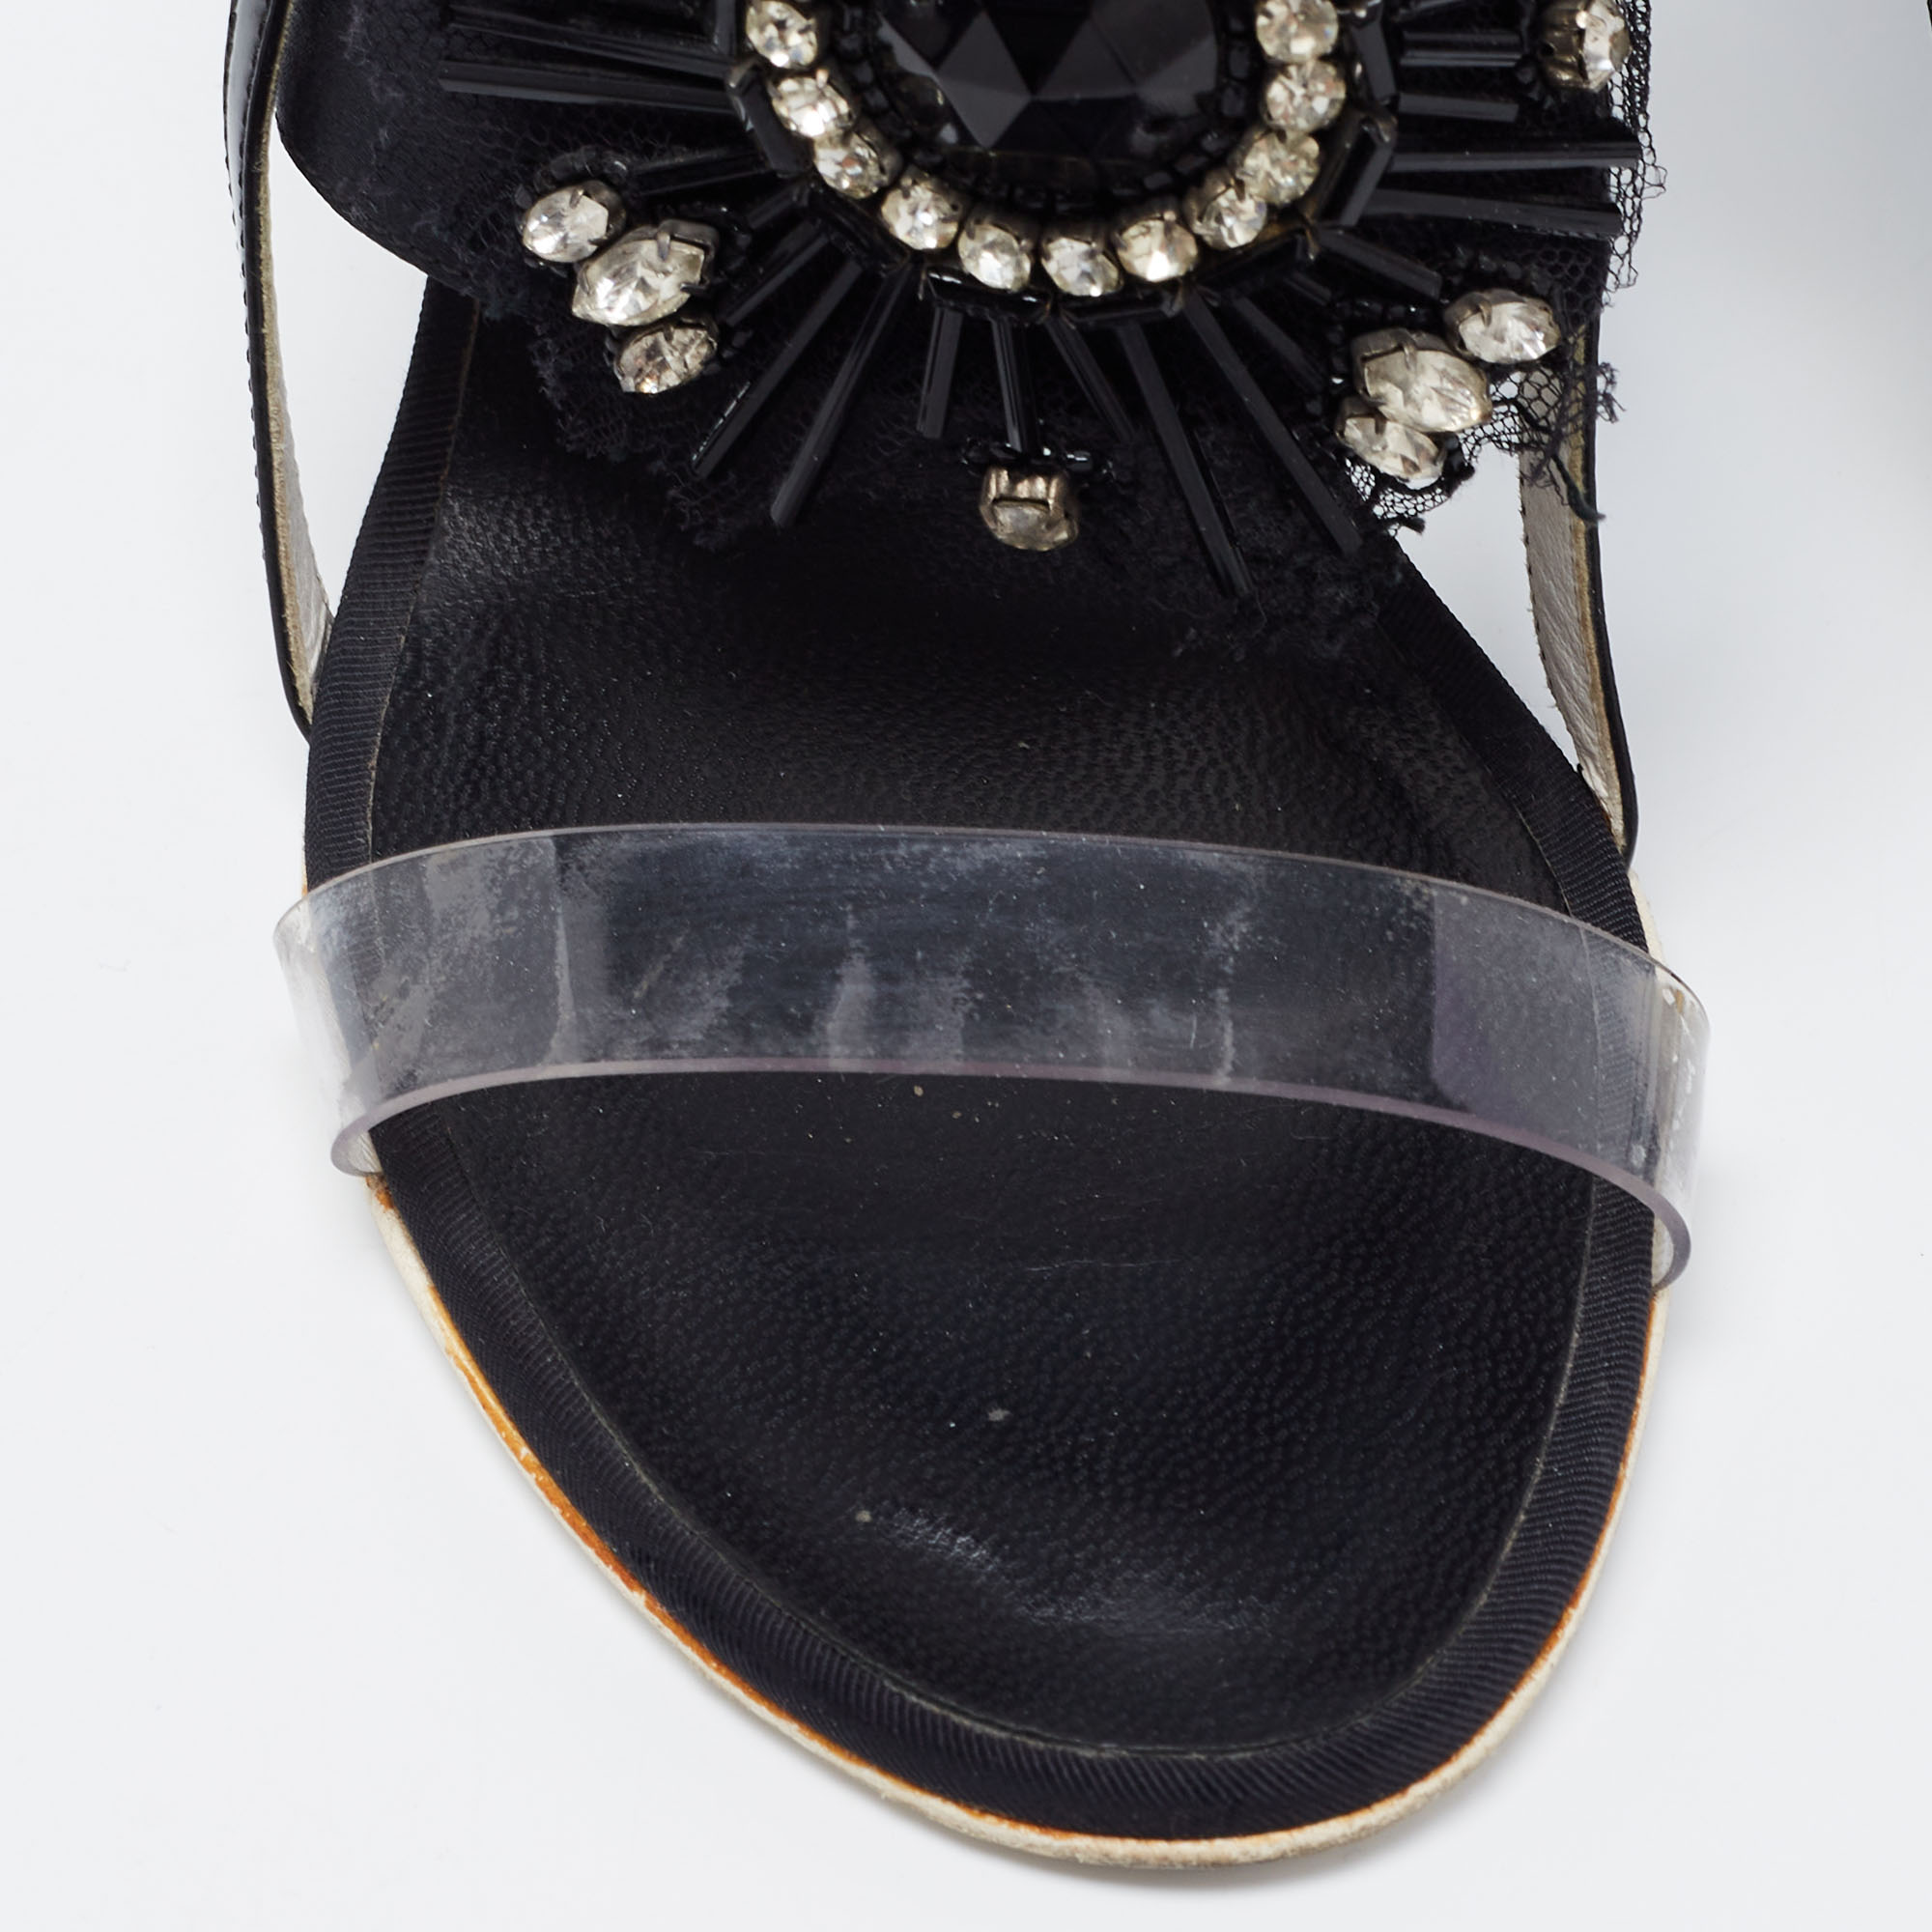 Chanel Black Satin And PVC Embellished Slingback Sandals Size 37.5